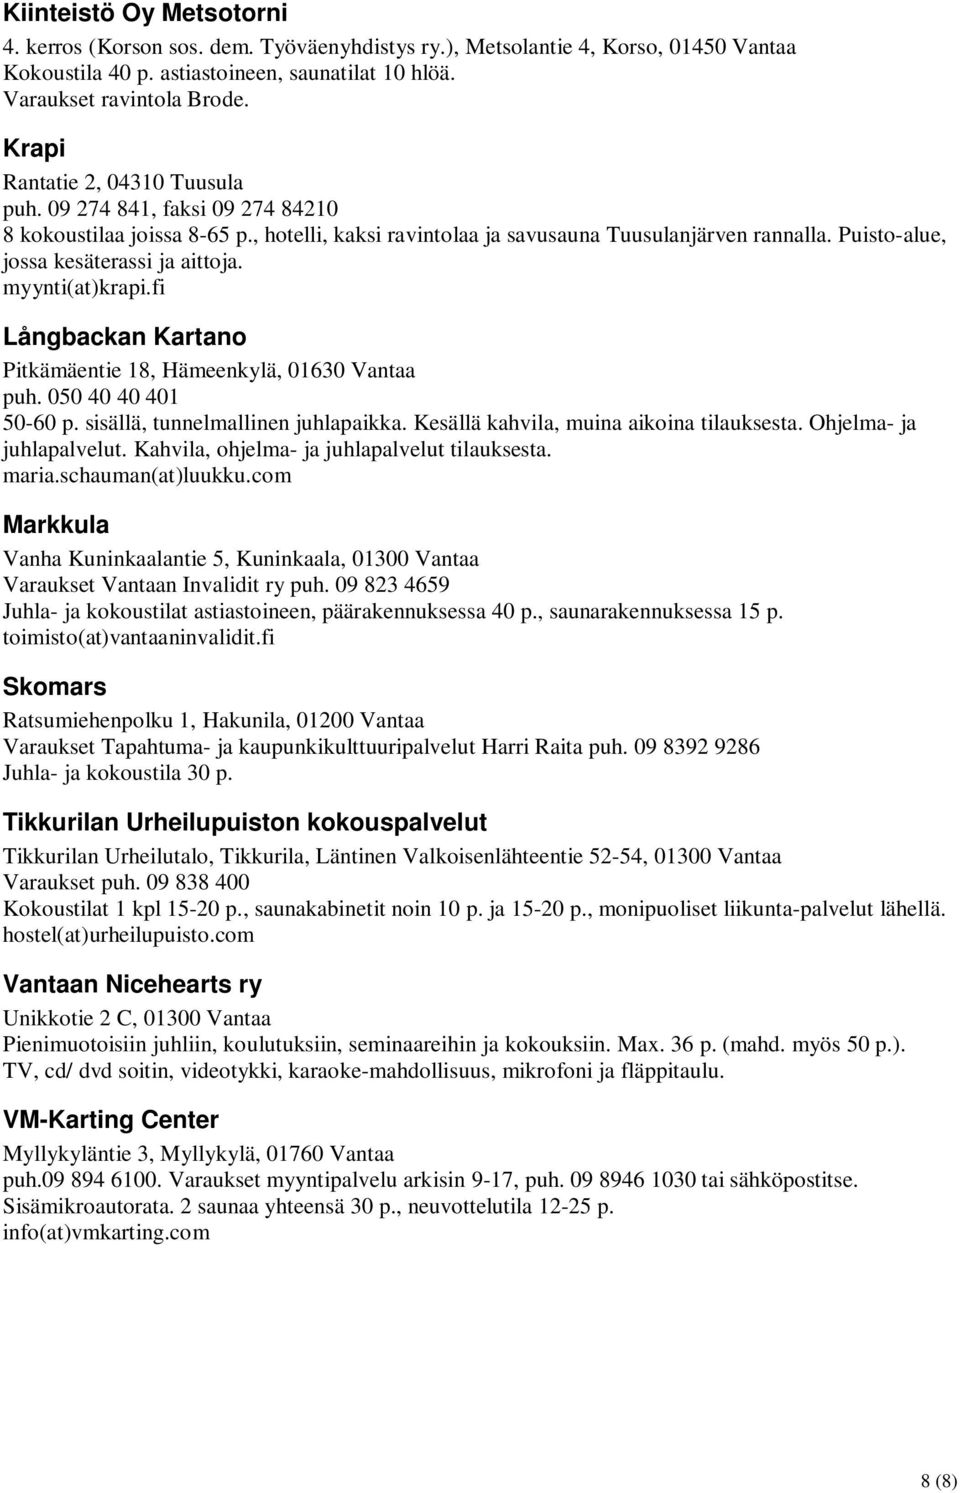 Puisto-alue, jossa kesäterassi ja aittoja. myynti(at)krapi.fi Långbackan Kartano Pitkämäentie 18, Hämeenkylä, 01630 Vantaa puh. 050 40 40 401 50-60 p. sisällä, tunnelmallinen juhlapaikka.